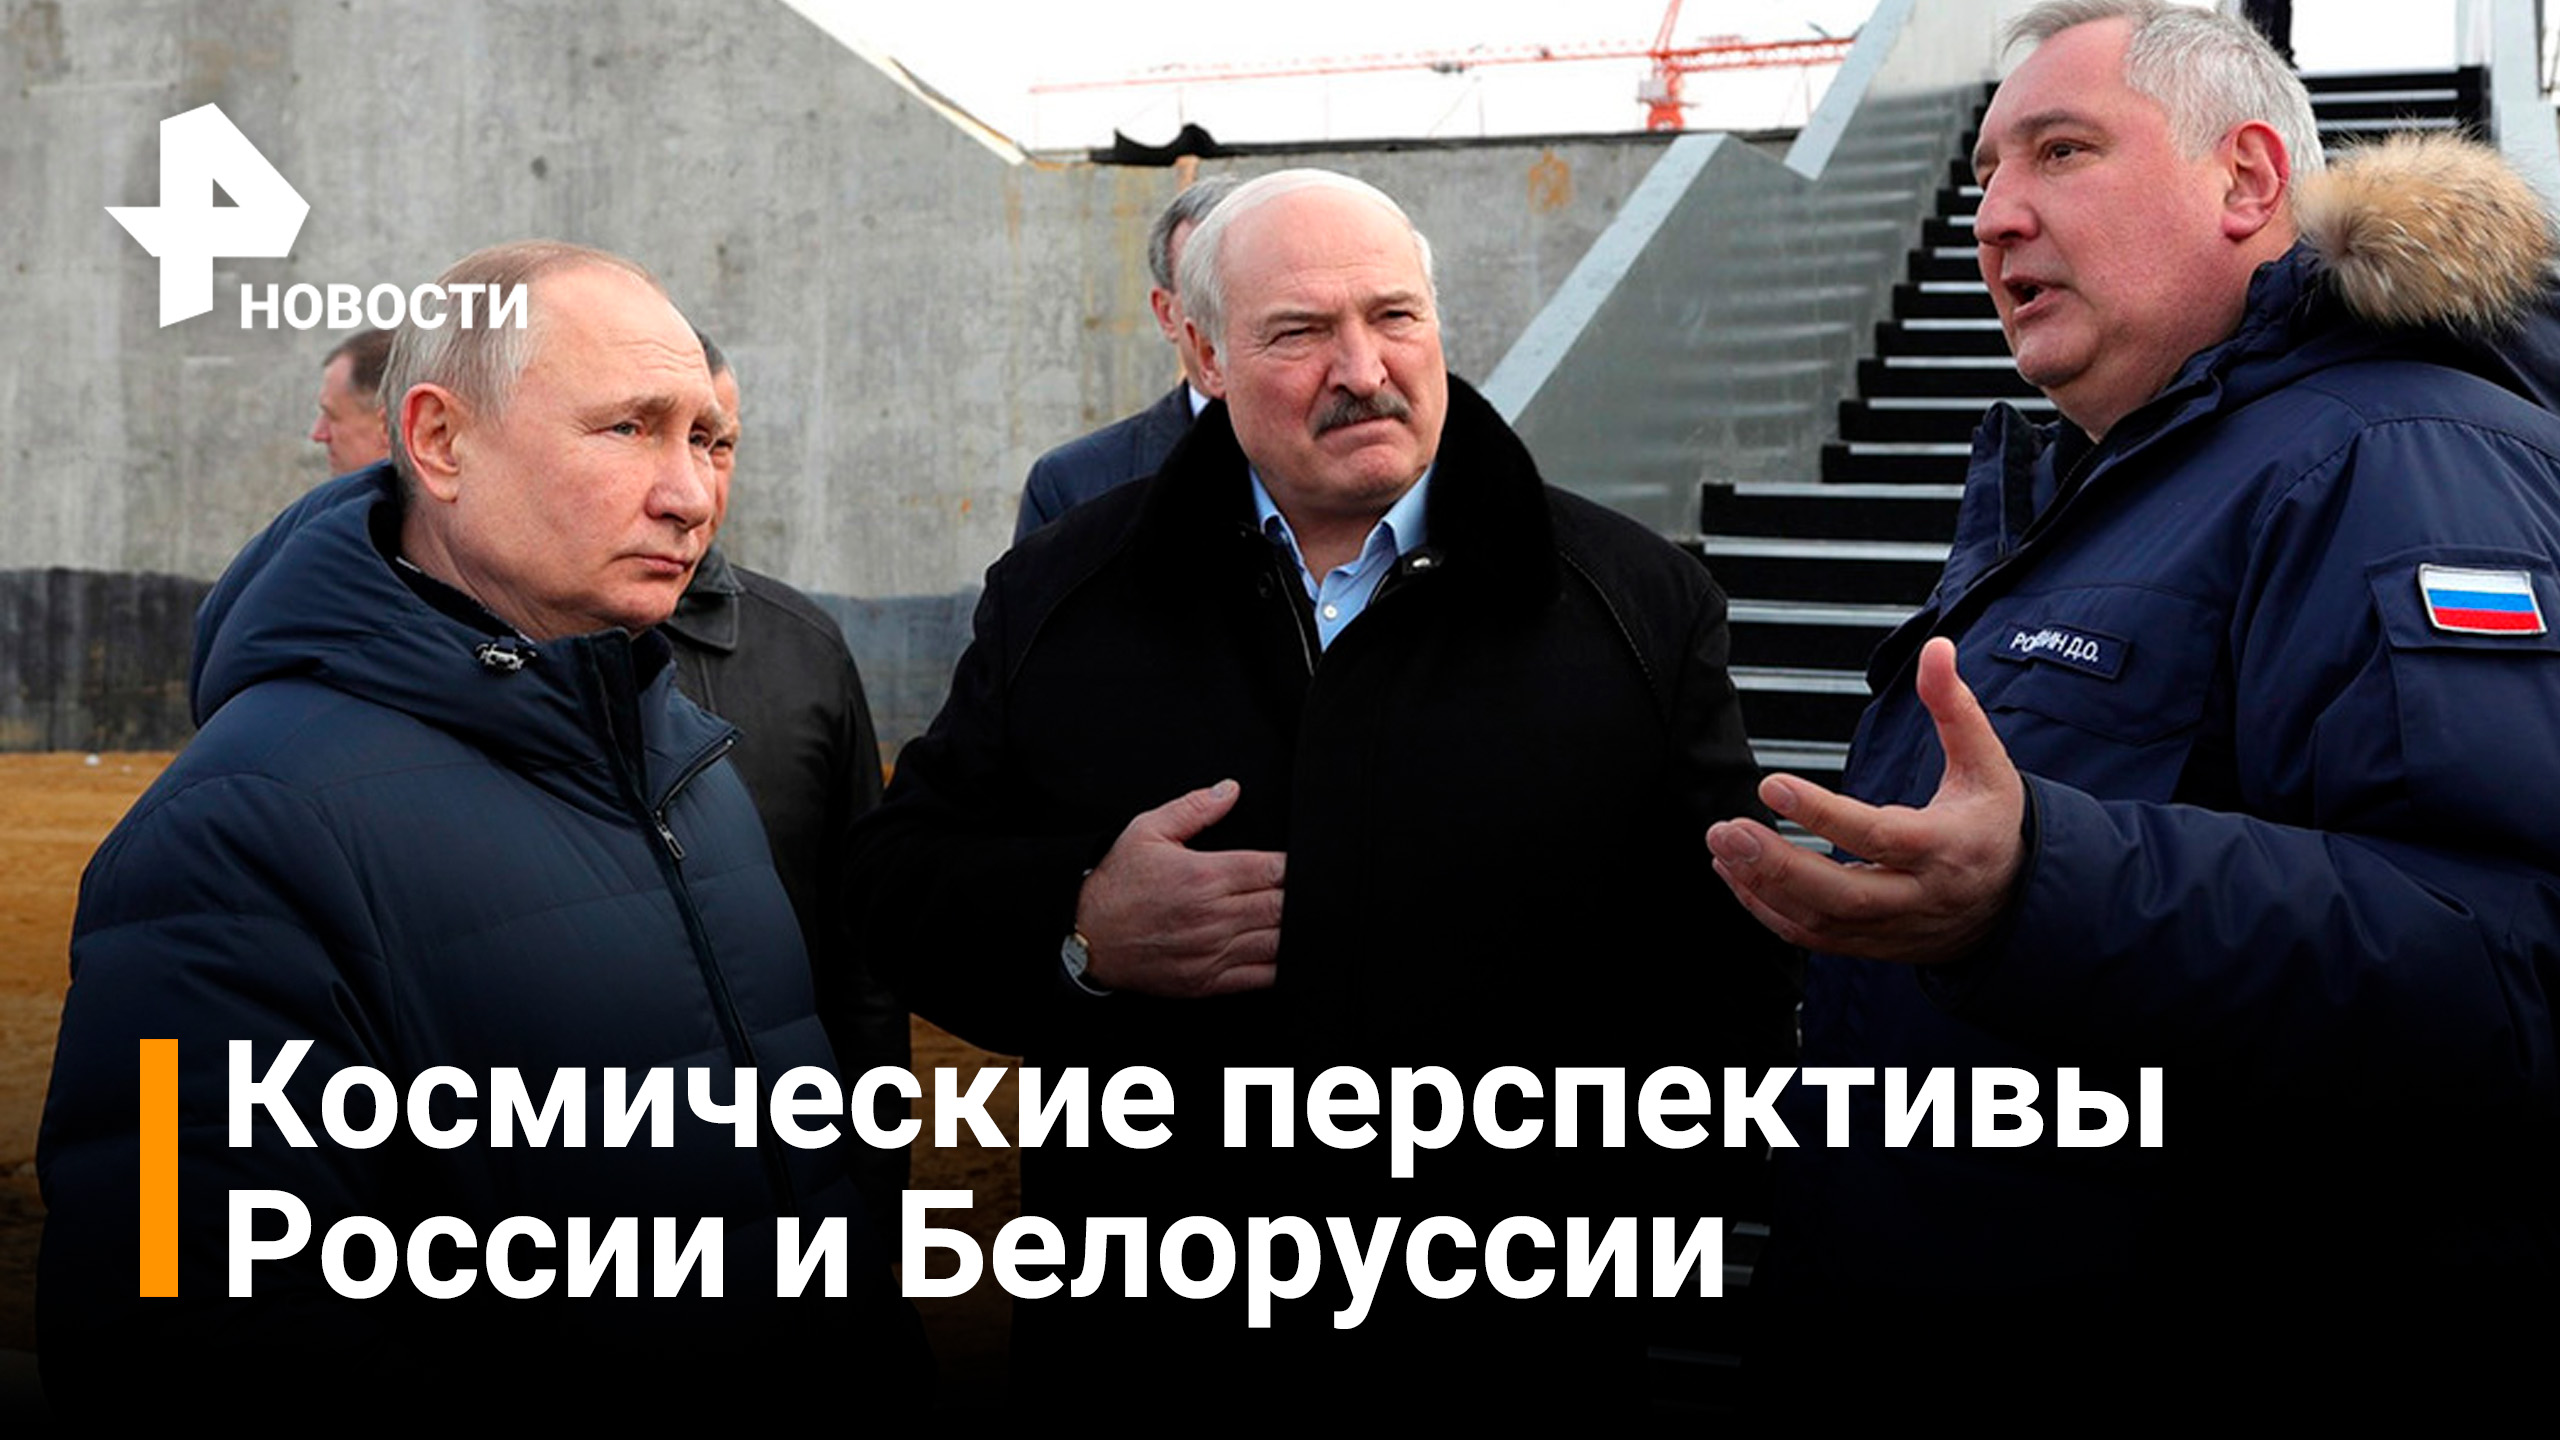 Как Путин и Лукашенко осмотрели космодром "Восточный" и договорились о строительстве / РЕН Новости